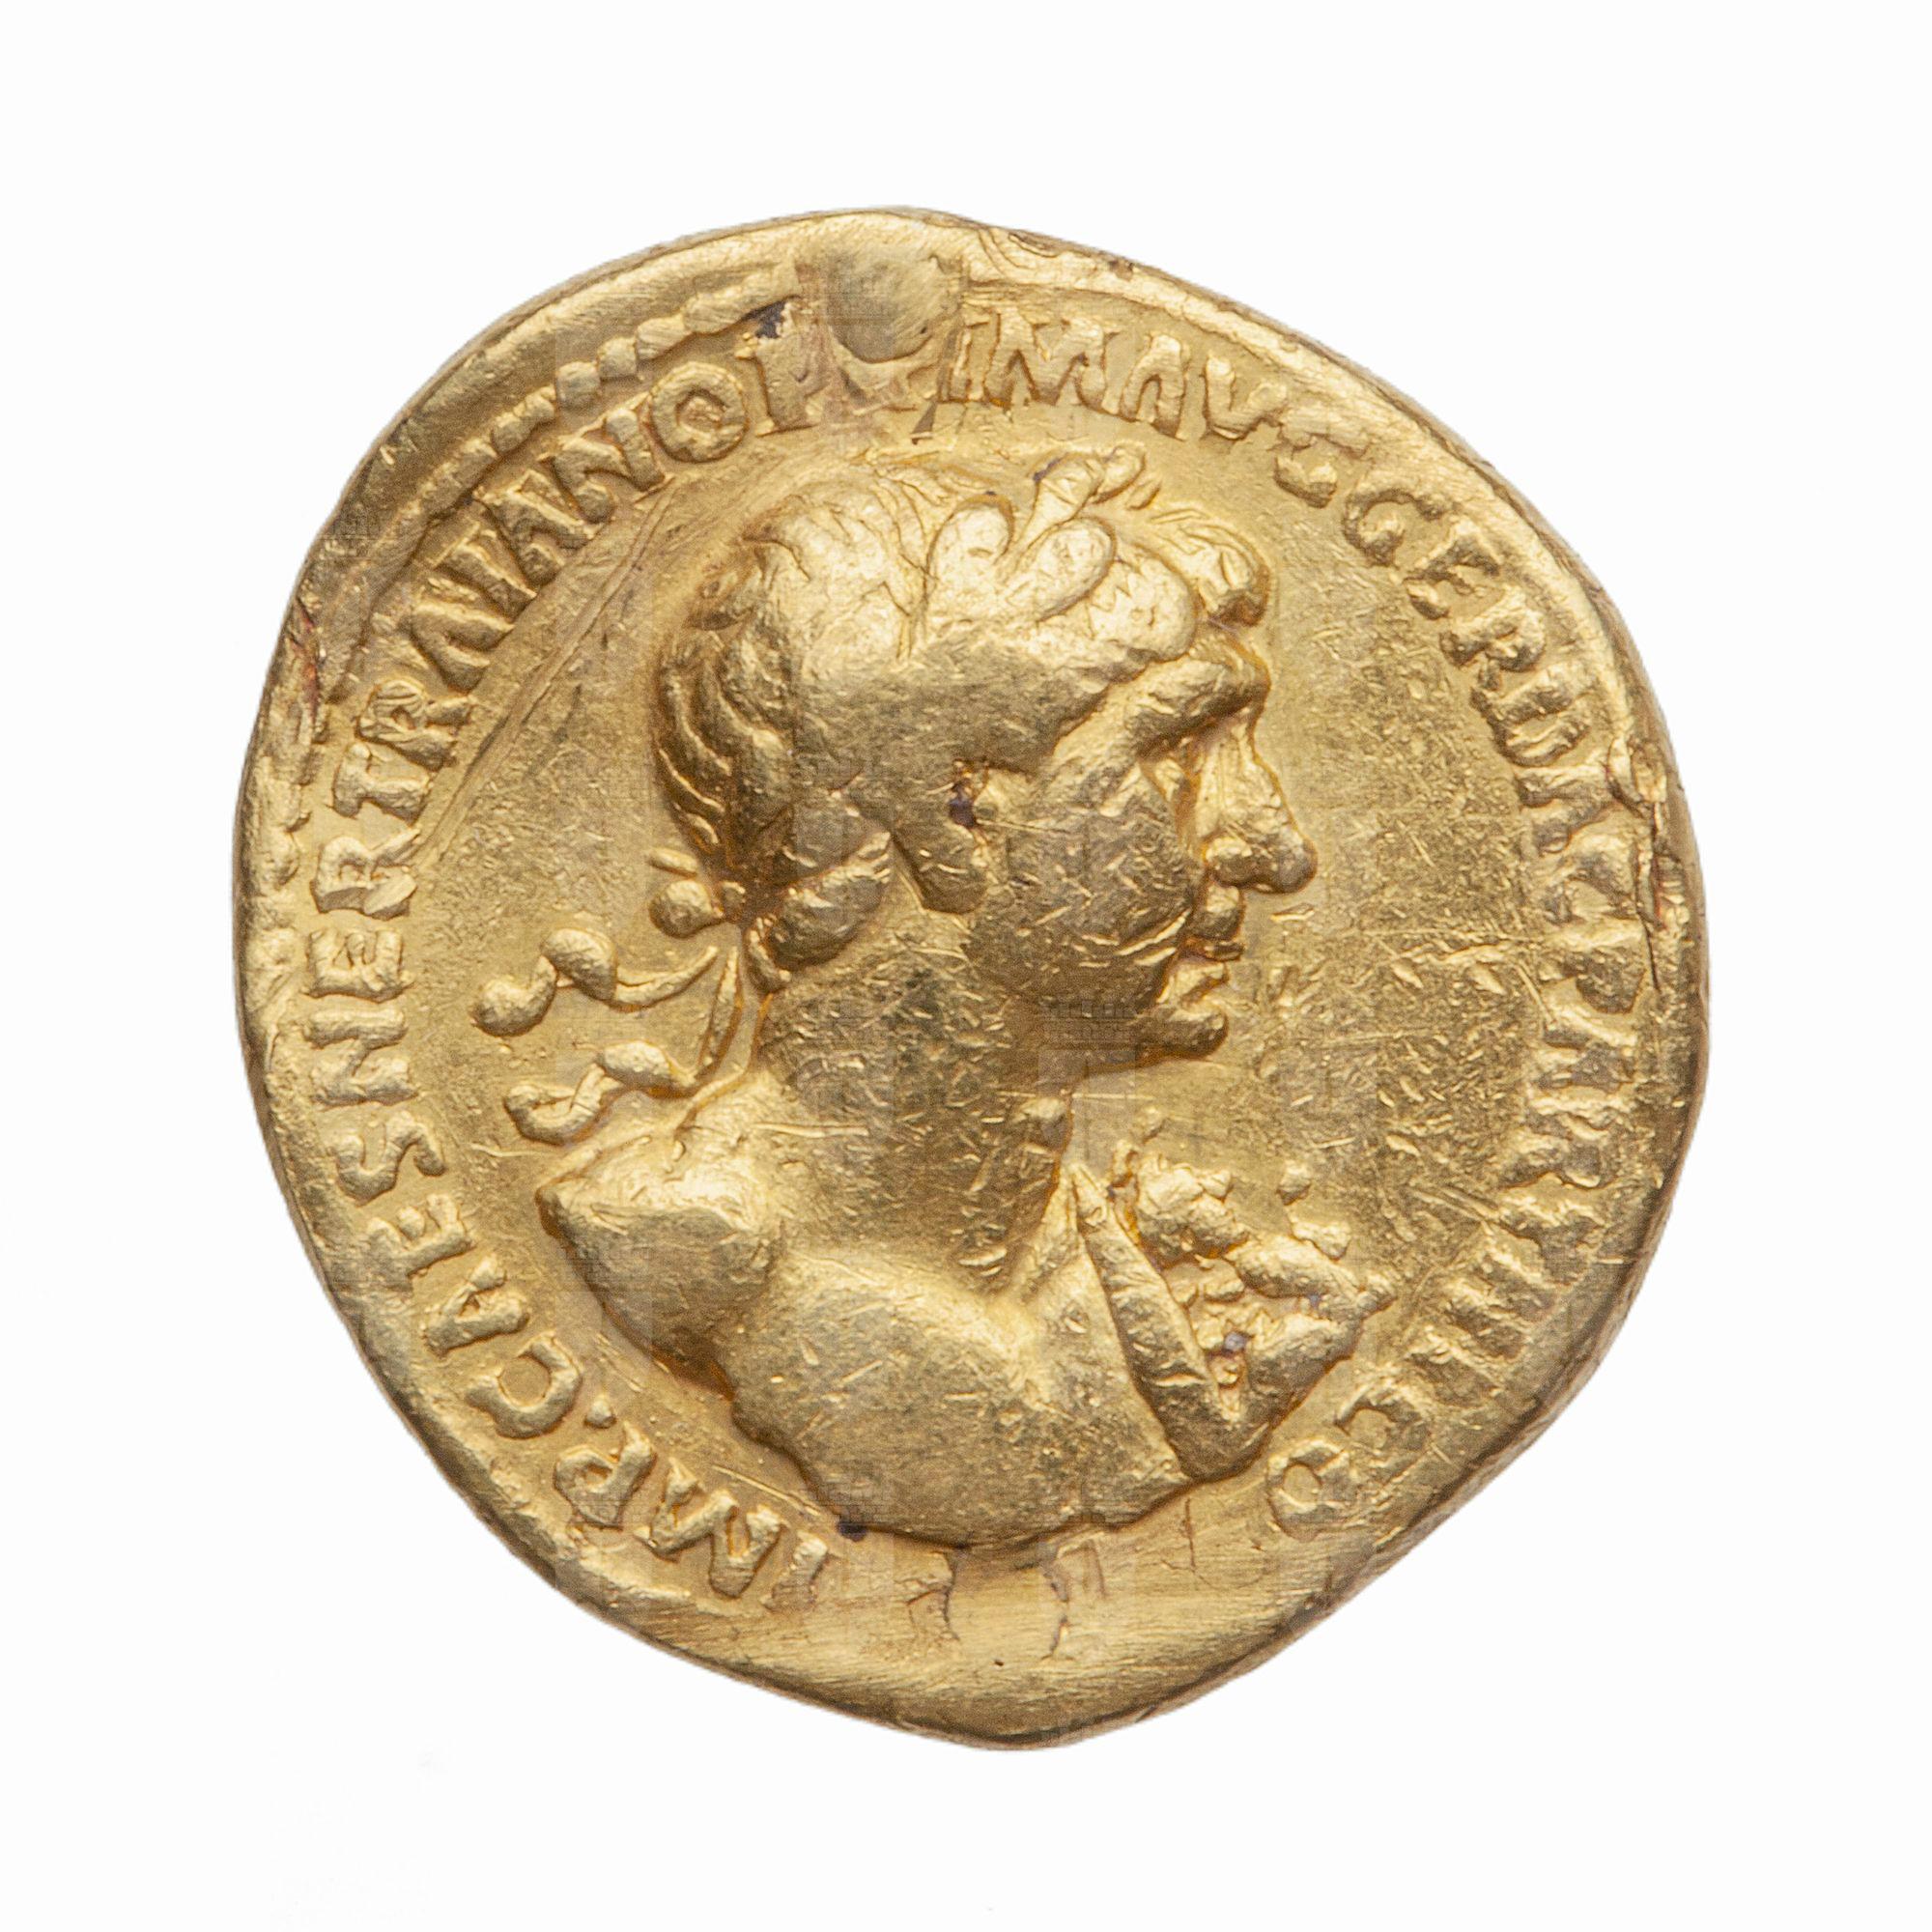 https://catalogomusei.comune.trieste.it/samira/resource/image/reperti-archeologici/Roma 420 D Traiano.jpg?token=65e6c0856b596